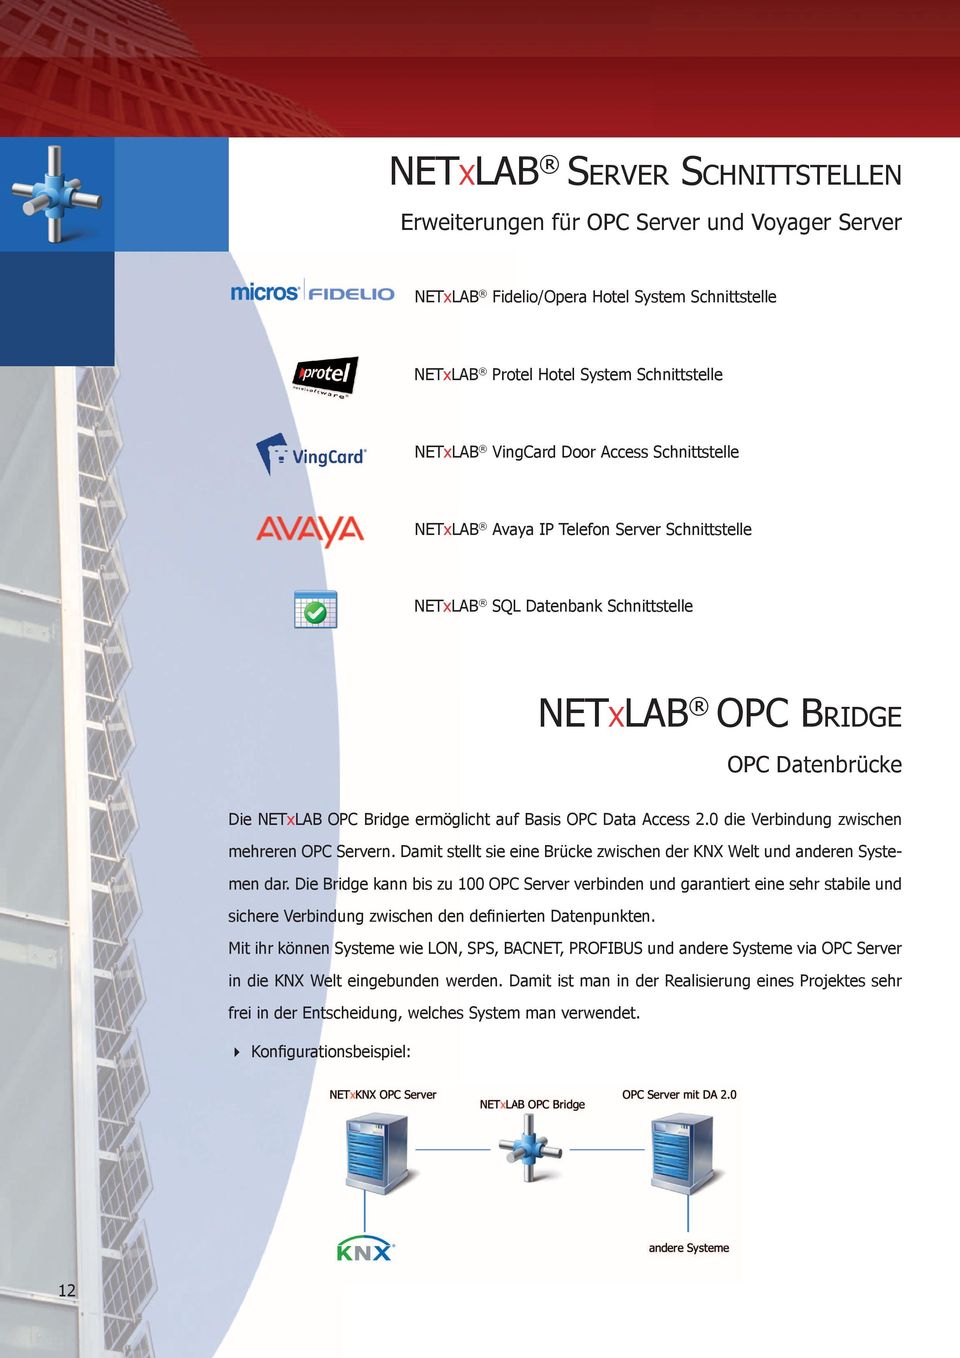 0 die Verbindung zwischen mehreren OPC Servern. Damit stellt sie eine Brücke zwischen der KNX Welt und anderen Systemen dar.